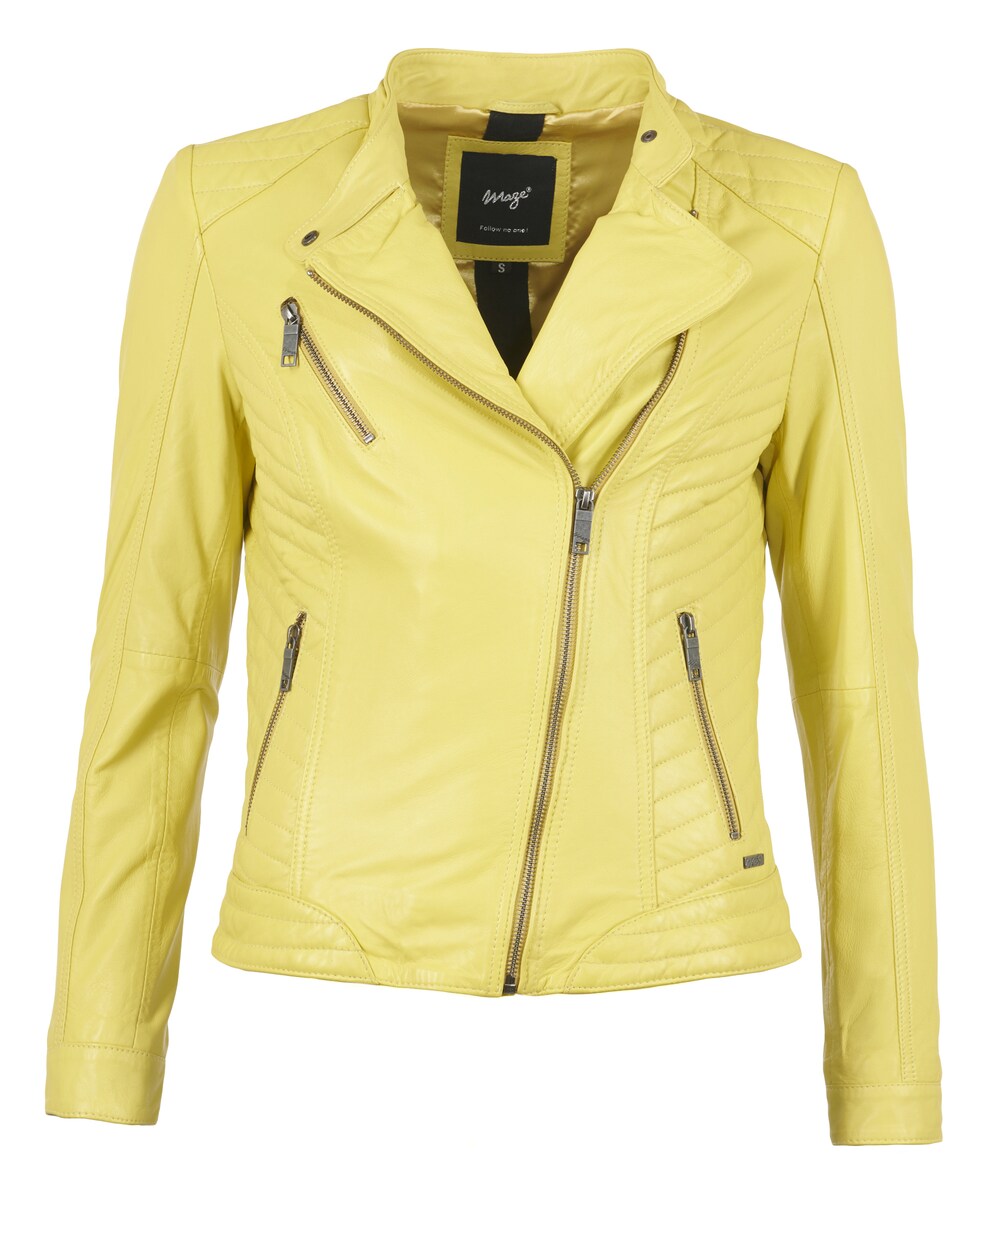 Межсезонная куртка Maze Sally, лимон желтый